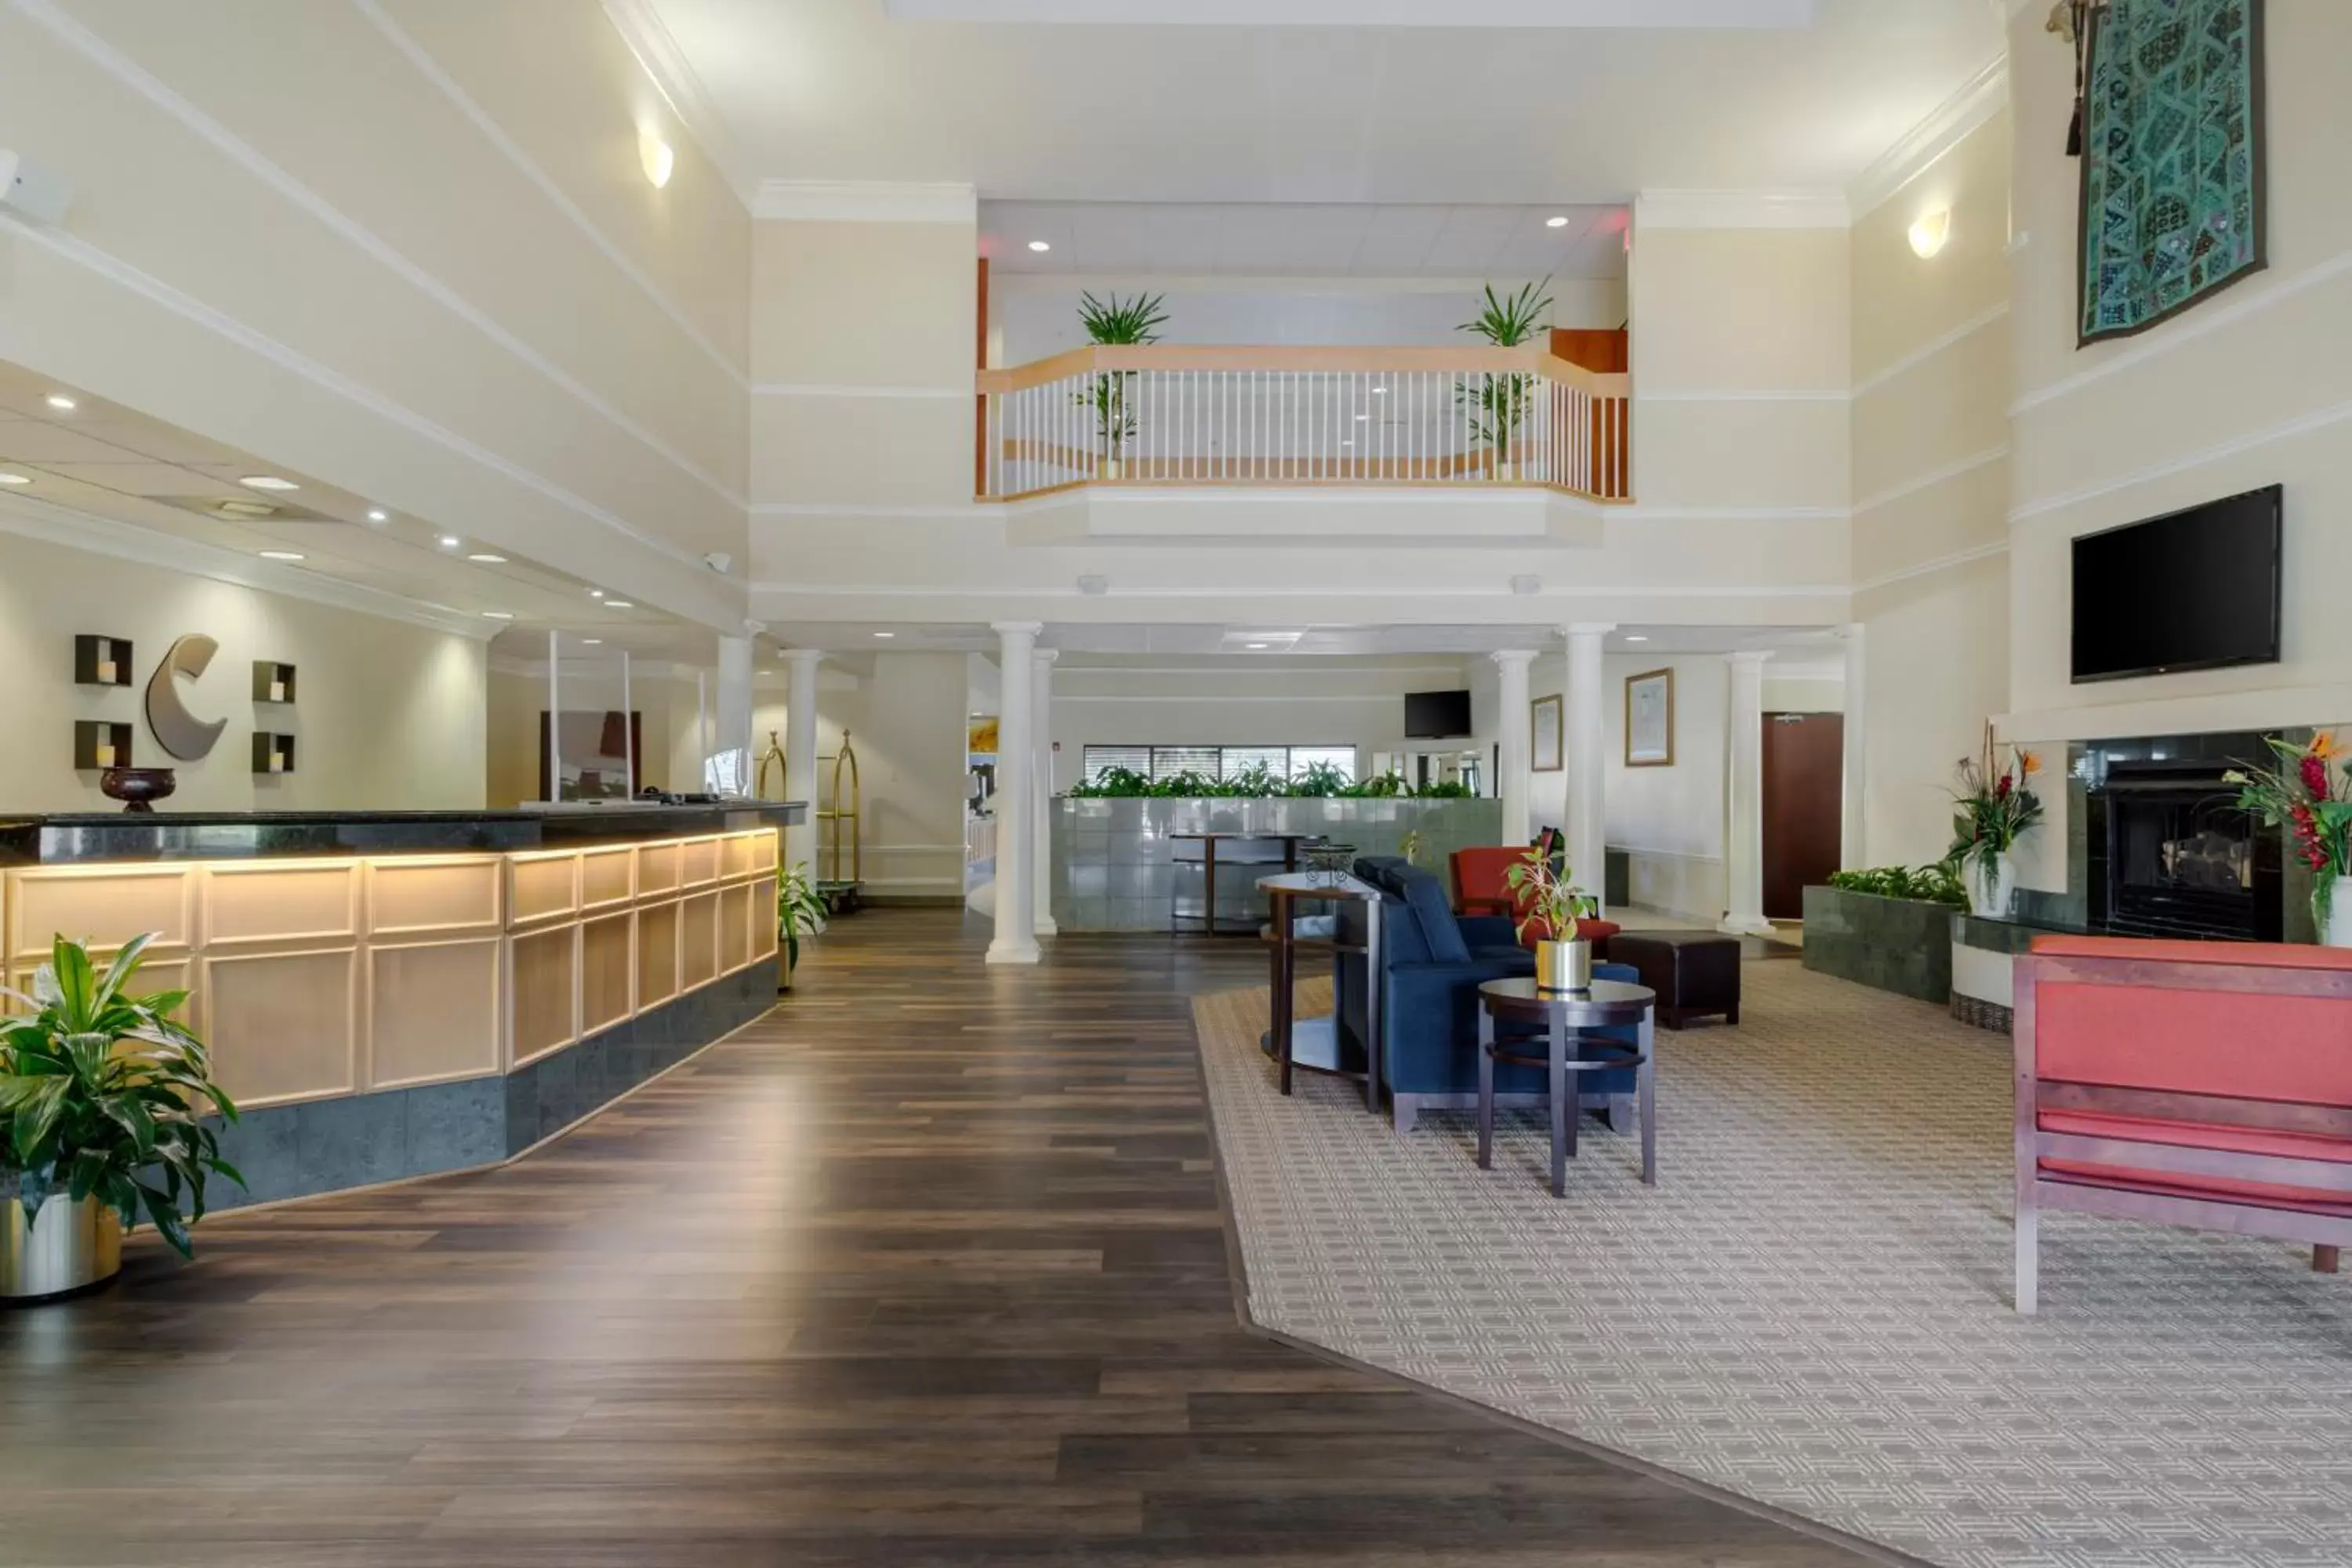 Lobby or reception in Comfort Suites La Porte